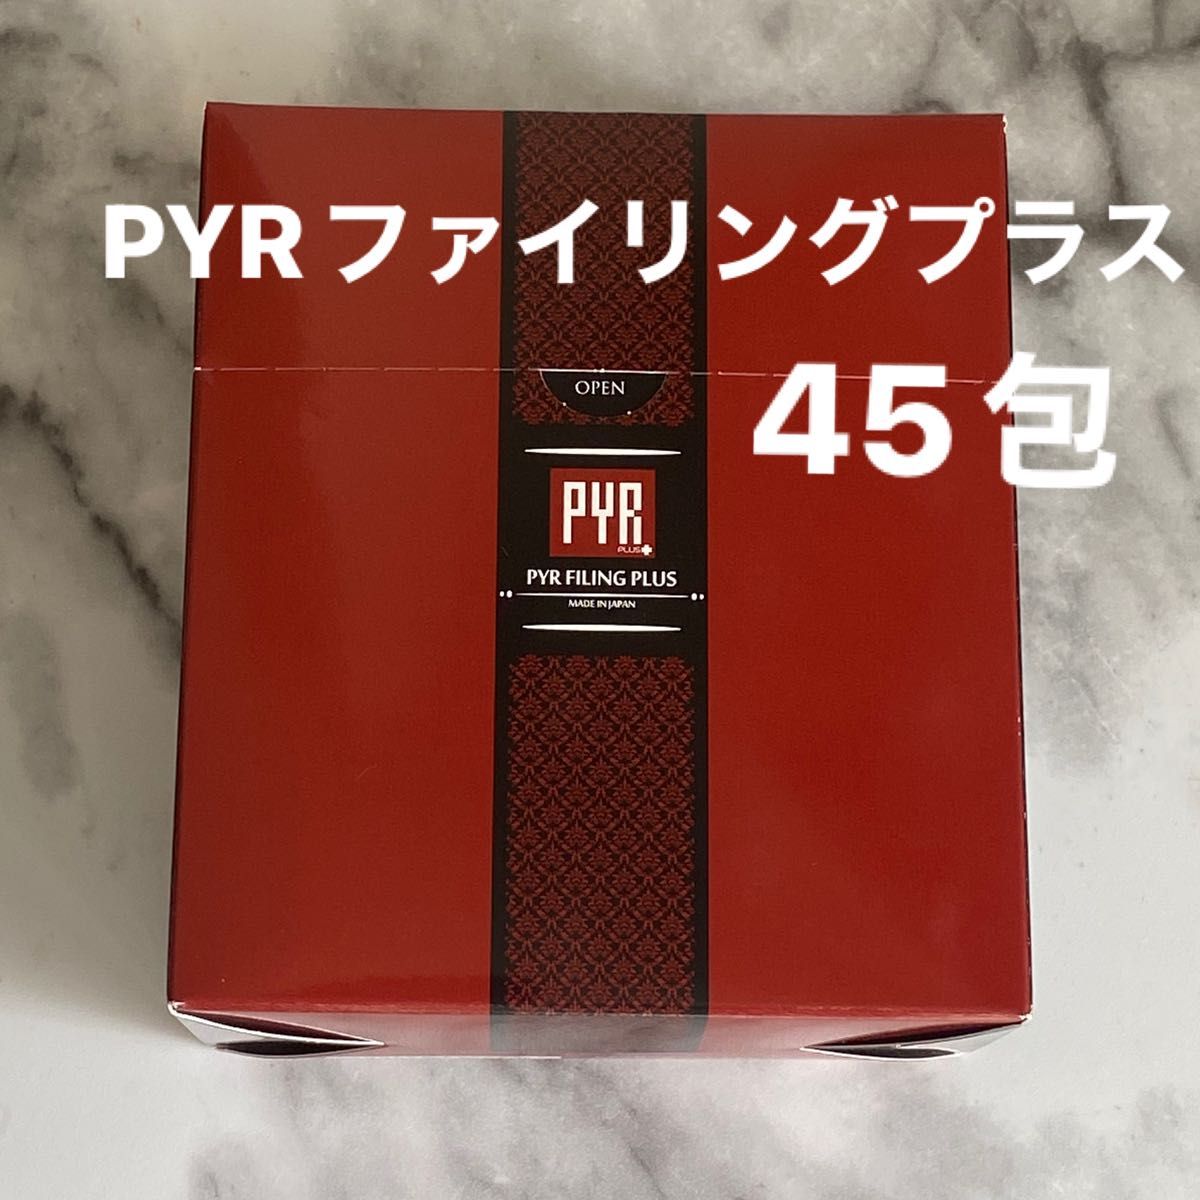 PYR★パイラファイリングプラス★45包未使用